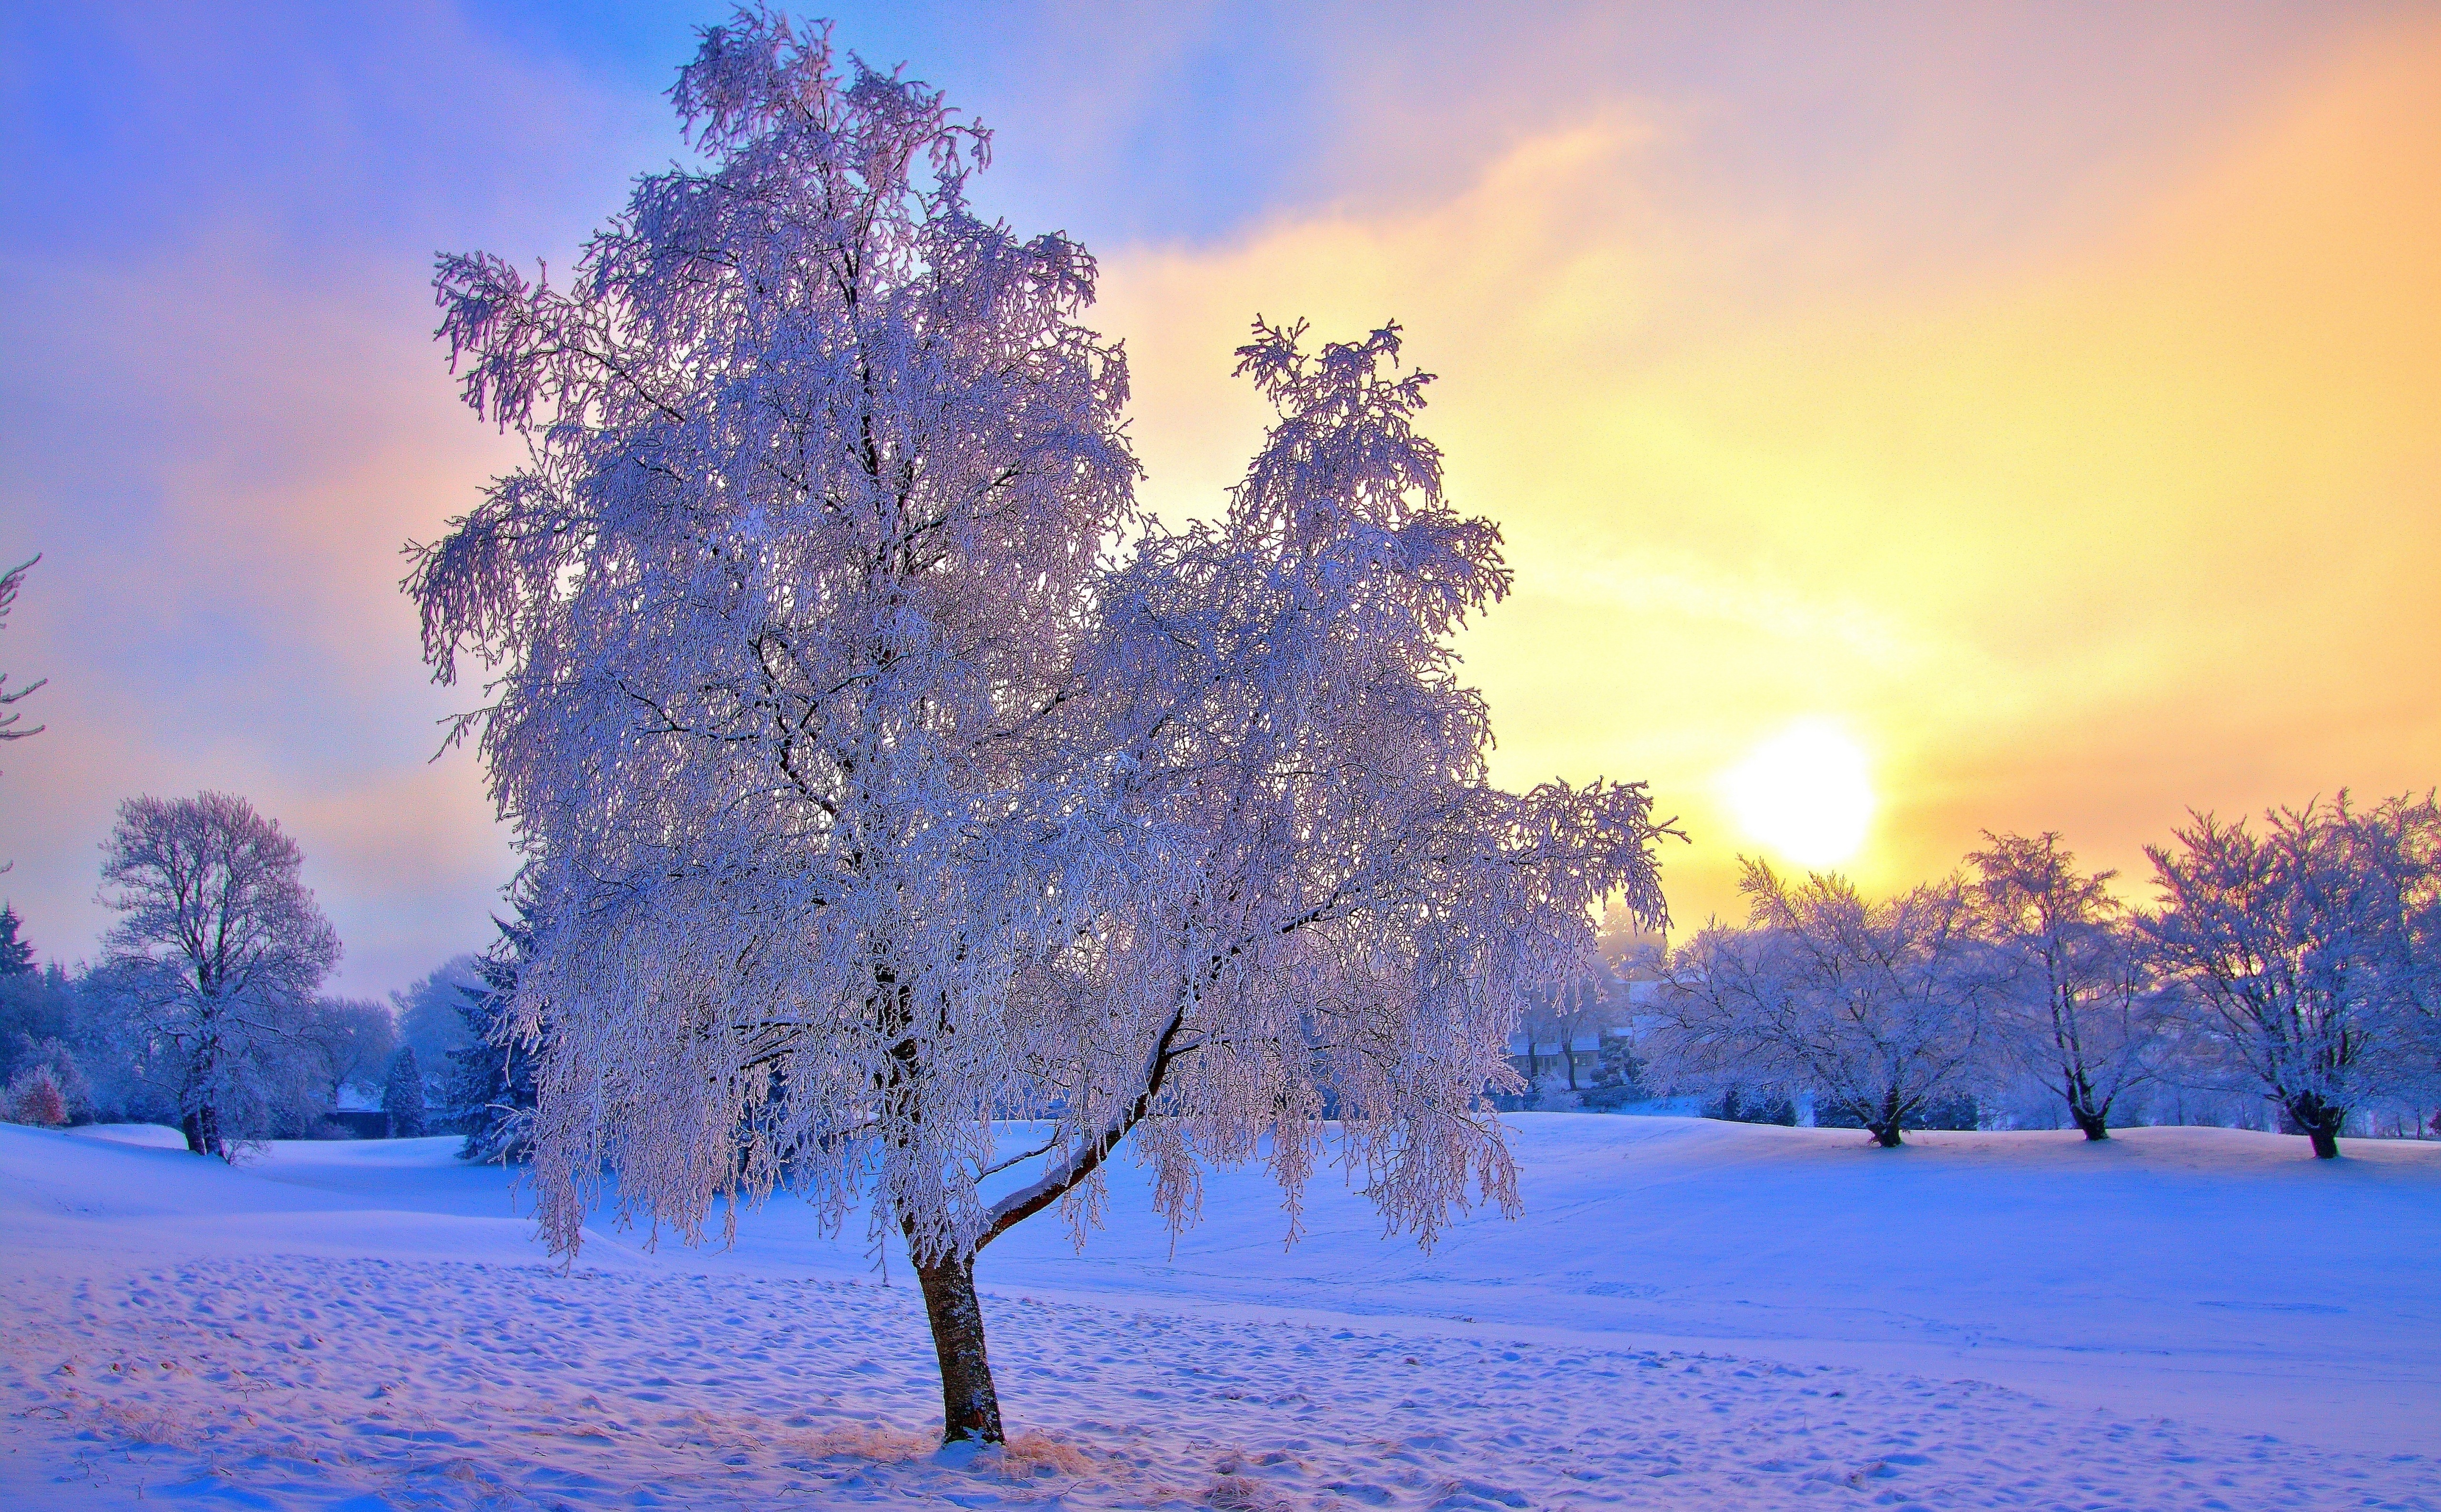 Скачать обои бесплатно Зима, Закат, Солнце, Снег, Дерево, Земля/природа картинка на рабочий стол ПК